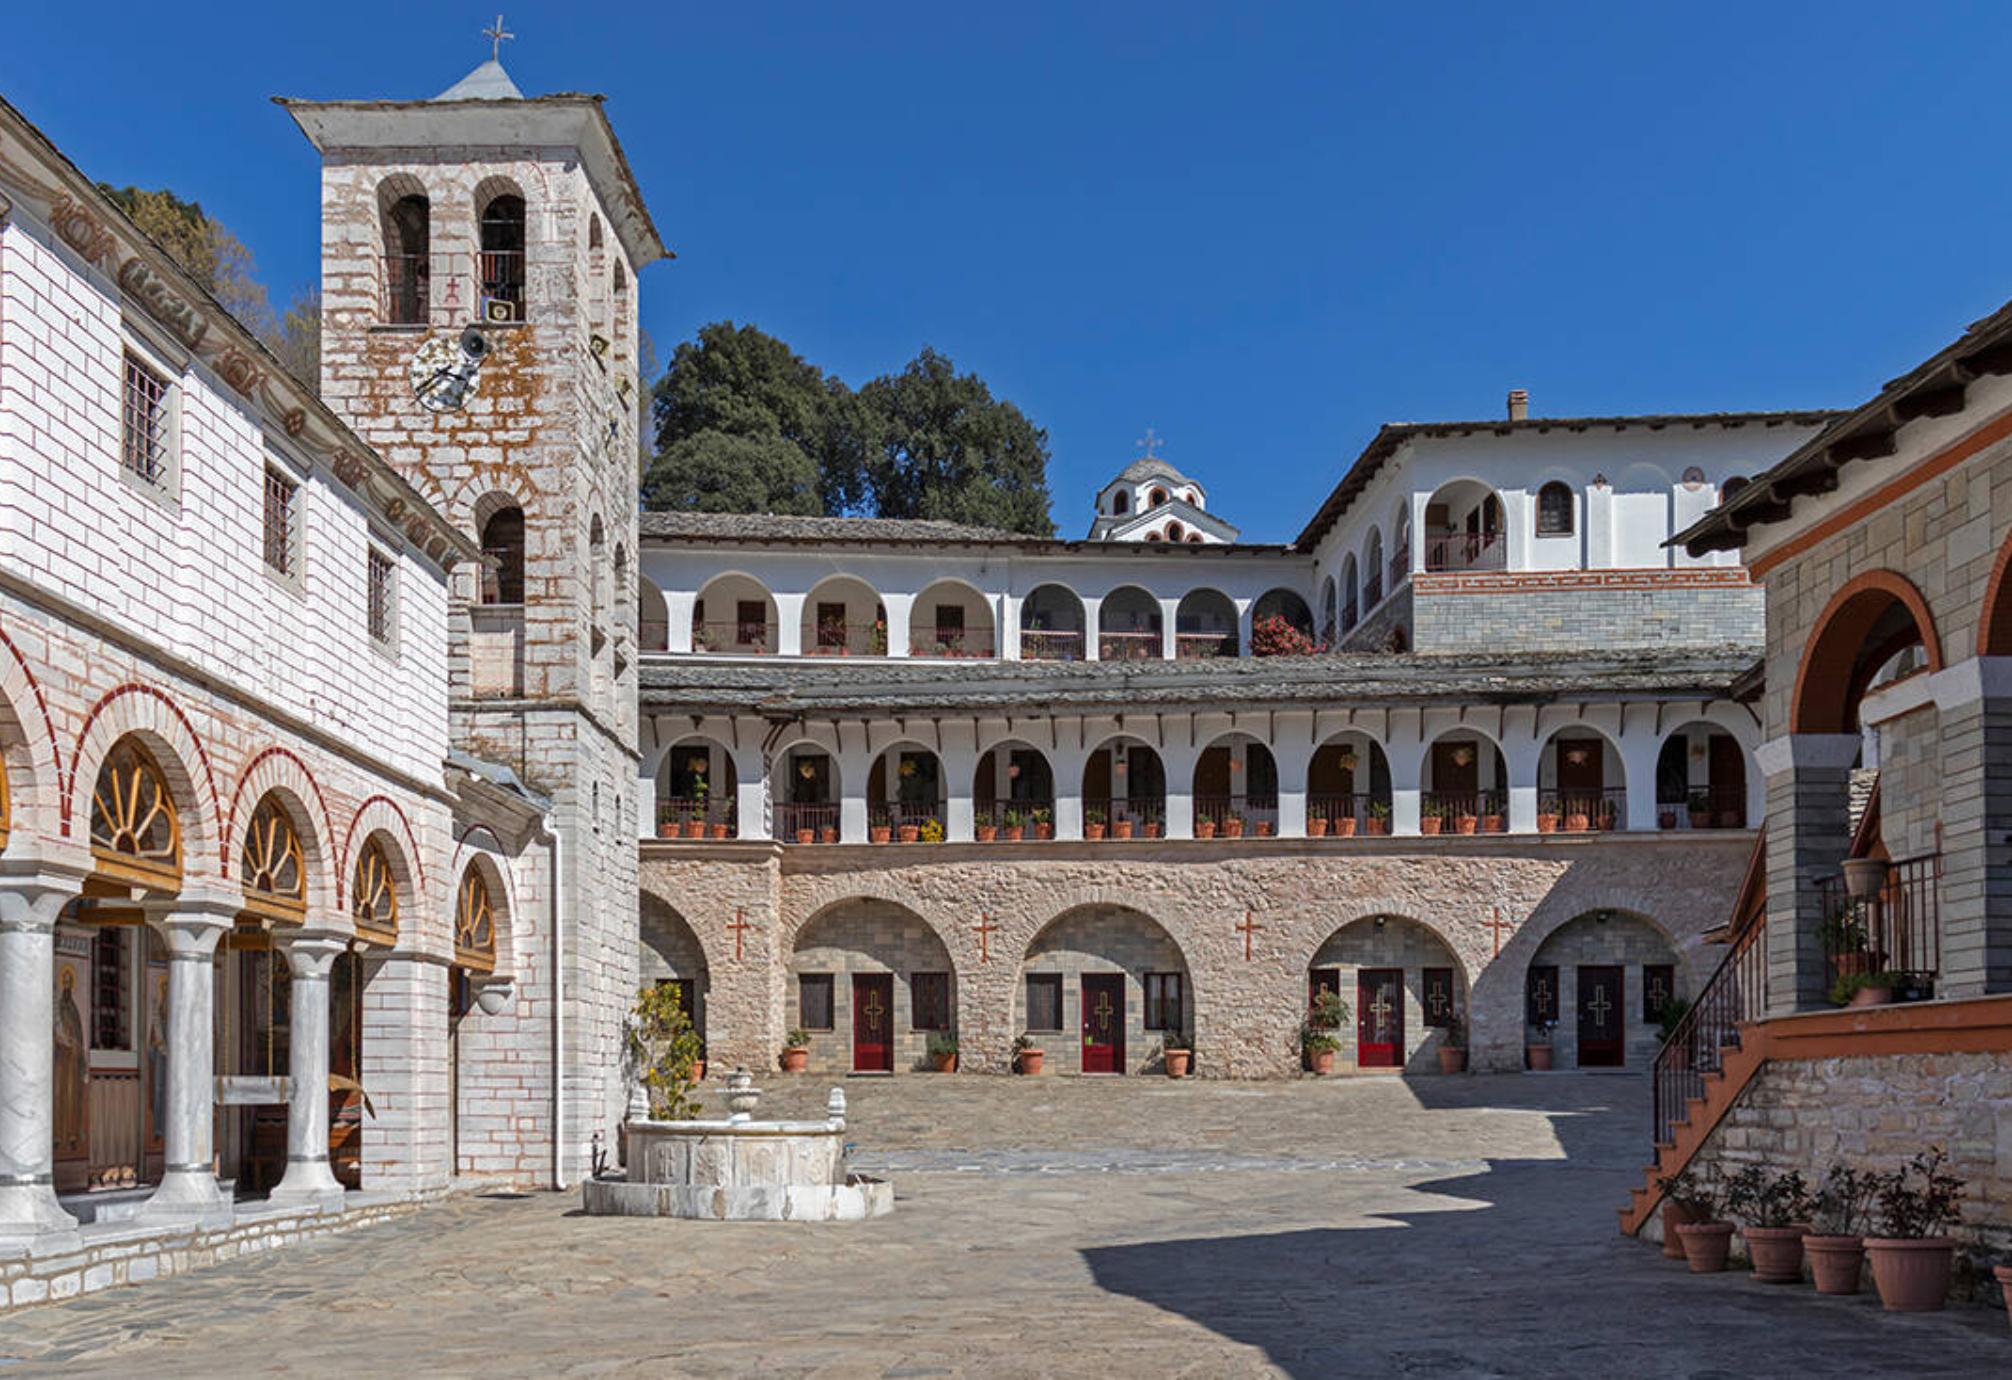 Η Παναγία η Εικοσιφοίνισσα: Η μαρτυρική ιστορία του παλαιότερου μοναστηριού της Ευρώπης – Η κτηνωδία των Τούρκων που έσφαξαν 172 μοναχούς